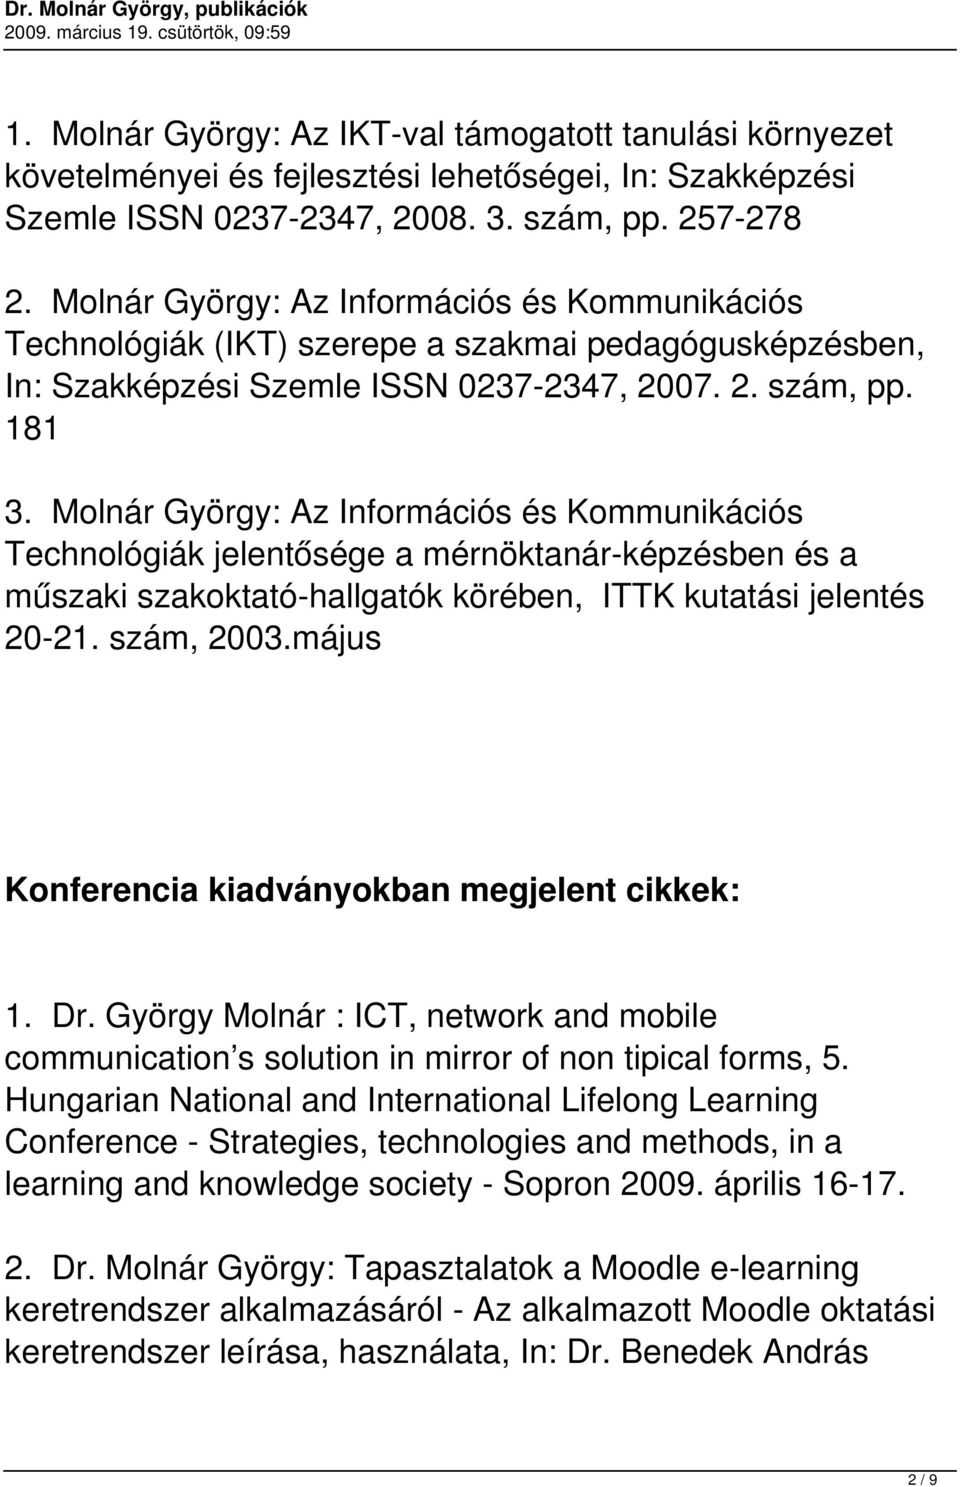 Molnár György: Az Információs és Kommunikációs Technológiák jelentősége a mérnöktanár-képzésben és a műszaki szakoktató-hallgatók körében, ITTK kutatási jelentés 20-21. szám, 2003.